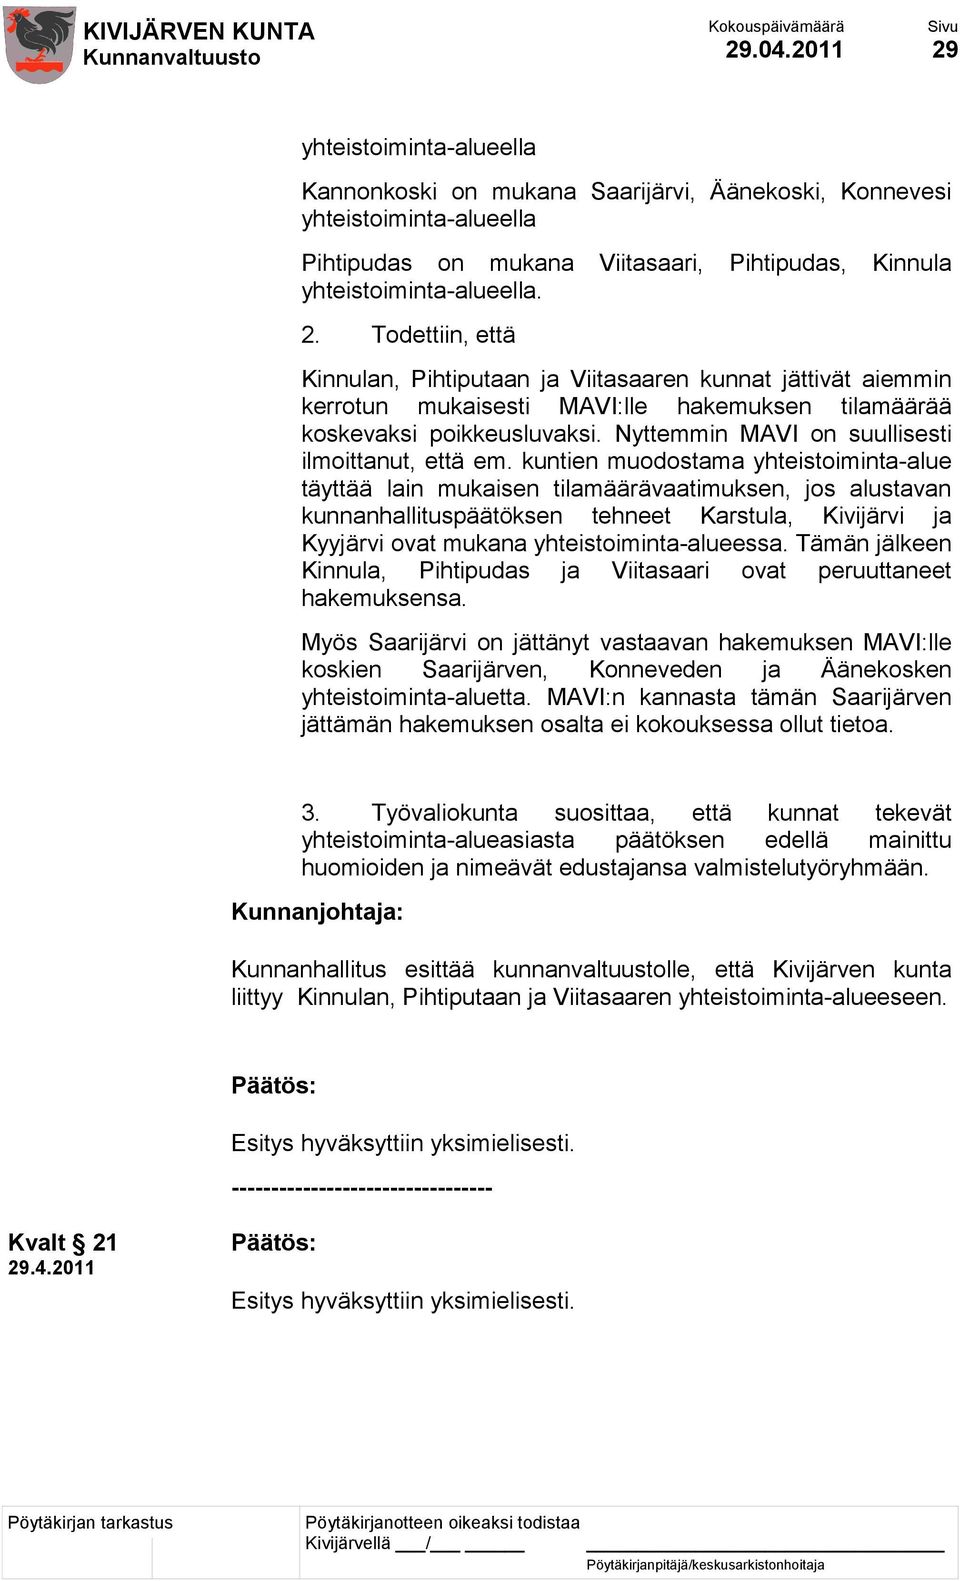 kuntien muodostama yhteistoiminta-alue täyttää lain mukaisen tilamäärävaatimuksen, jos alustavan kunnanhallituspäätöksen tehneet Karstula, Kivijärvi ja Kyyjärvi ovat mukana yhteistoiminta-alueessa.